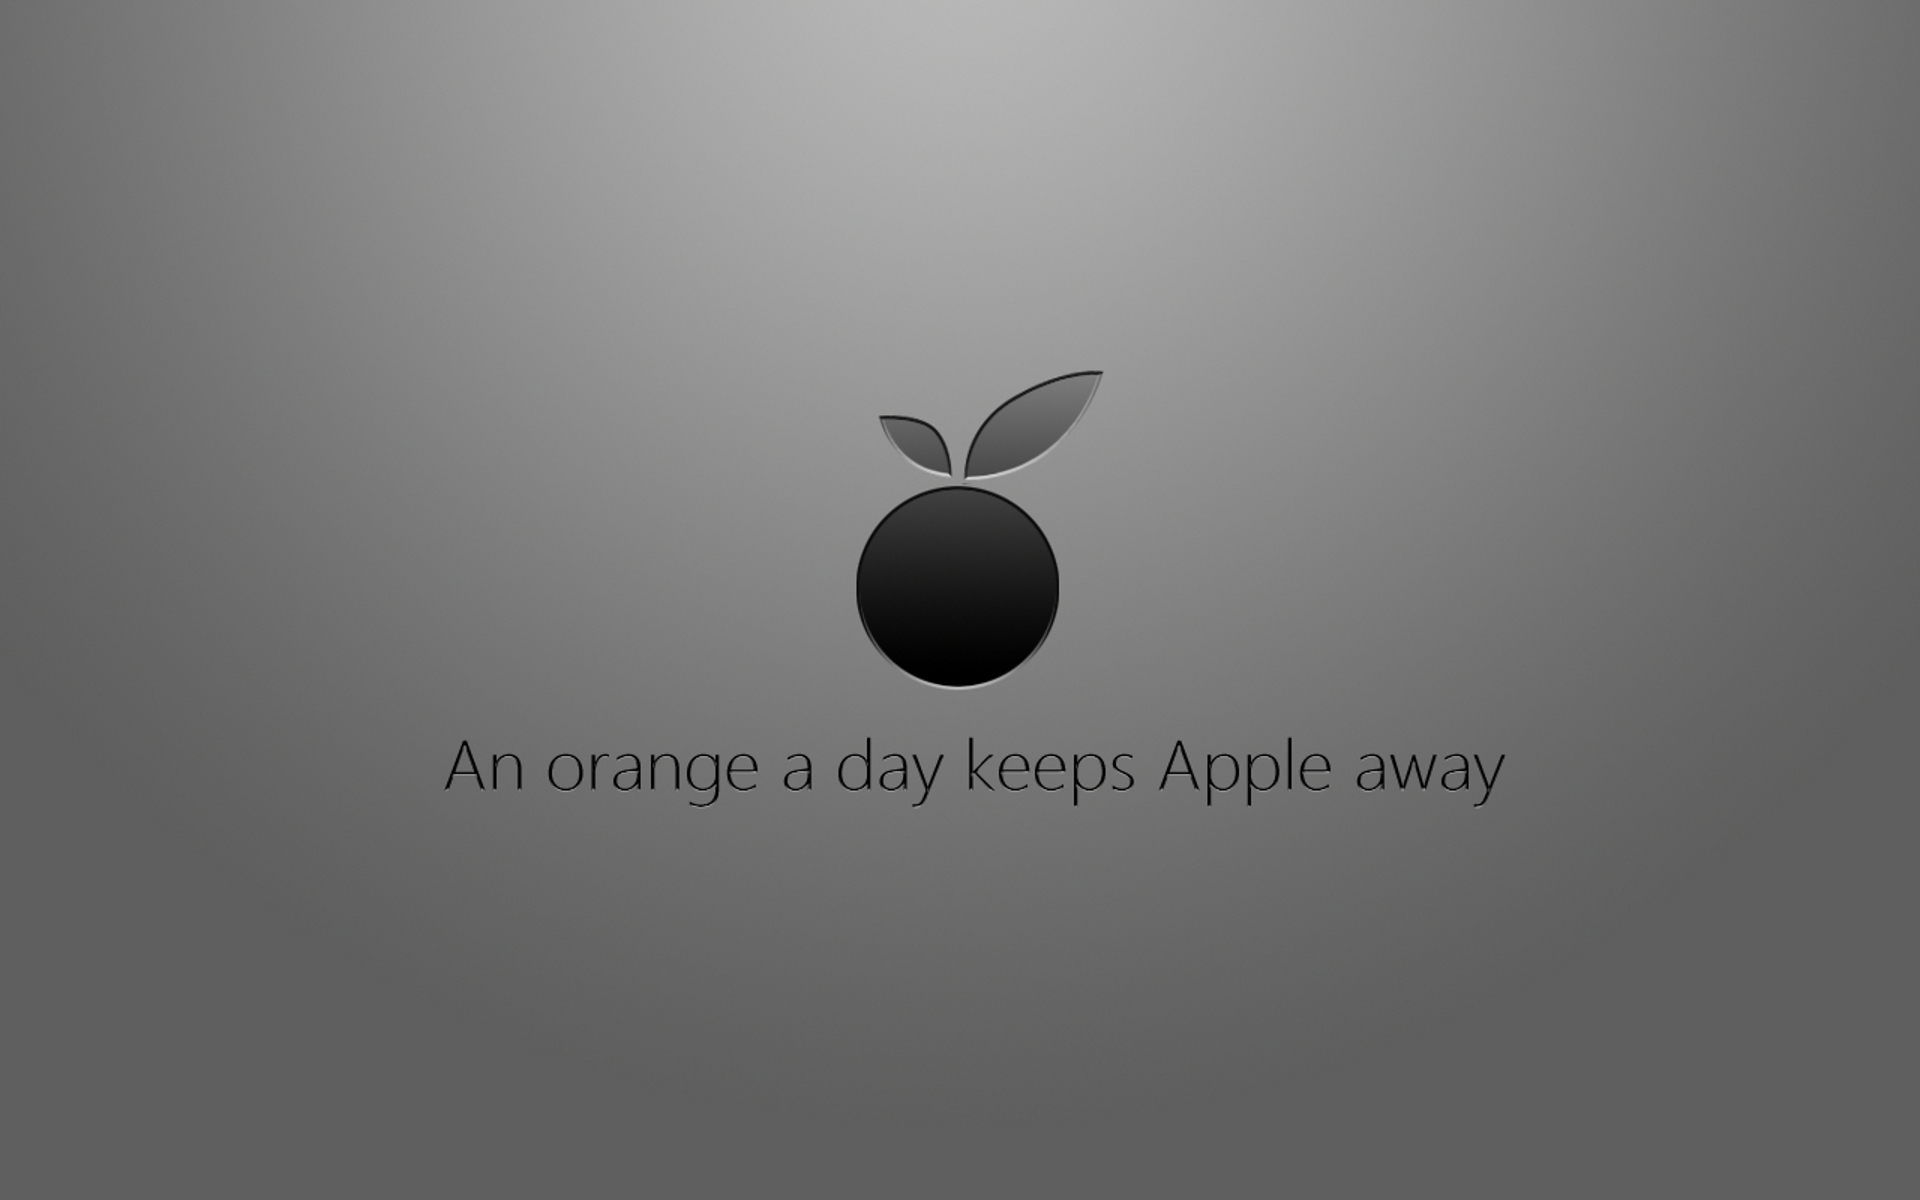 Apple Inc., typography - desktop wallpaper